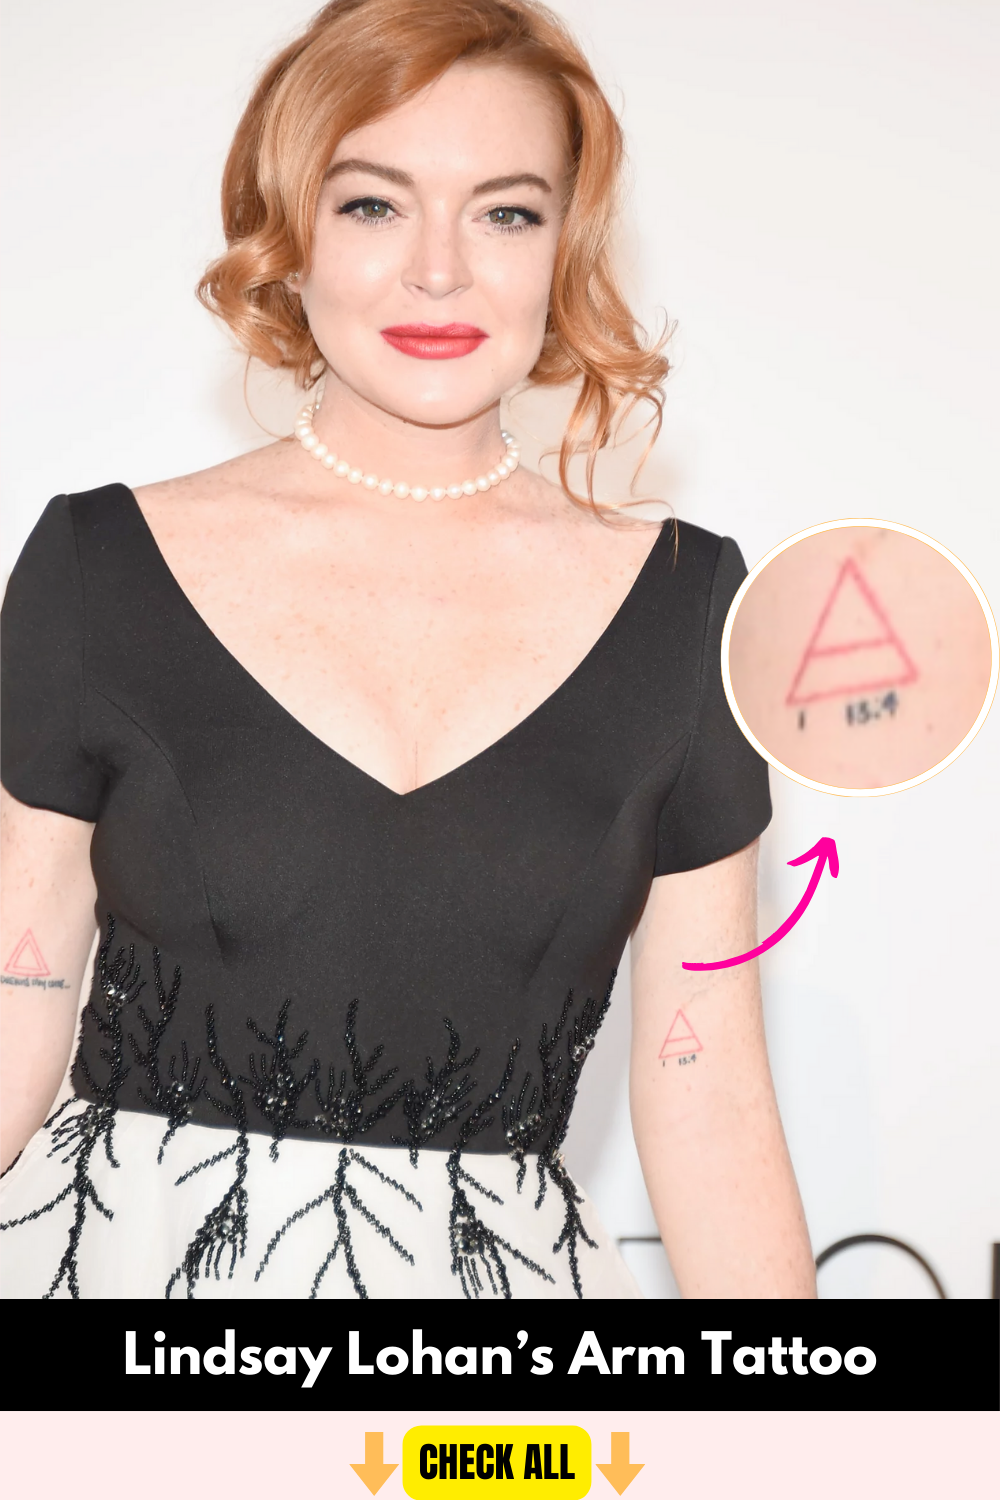 Lindsay-lohan-arm-tattoo-traingle-with-numbers